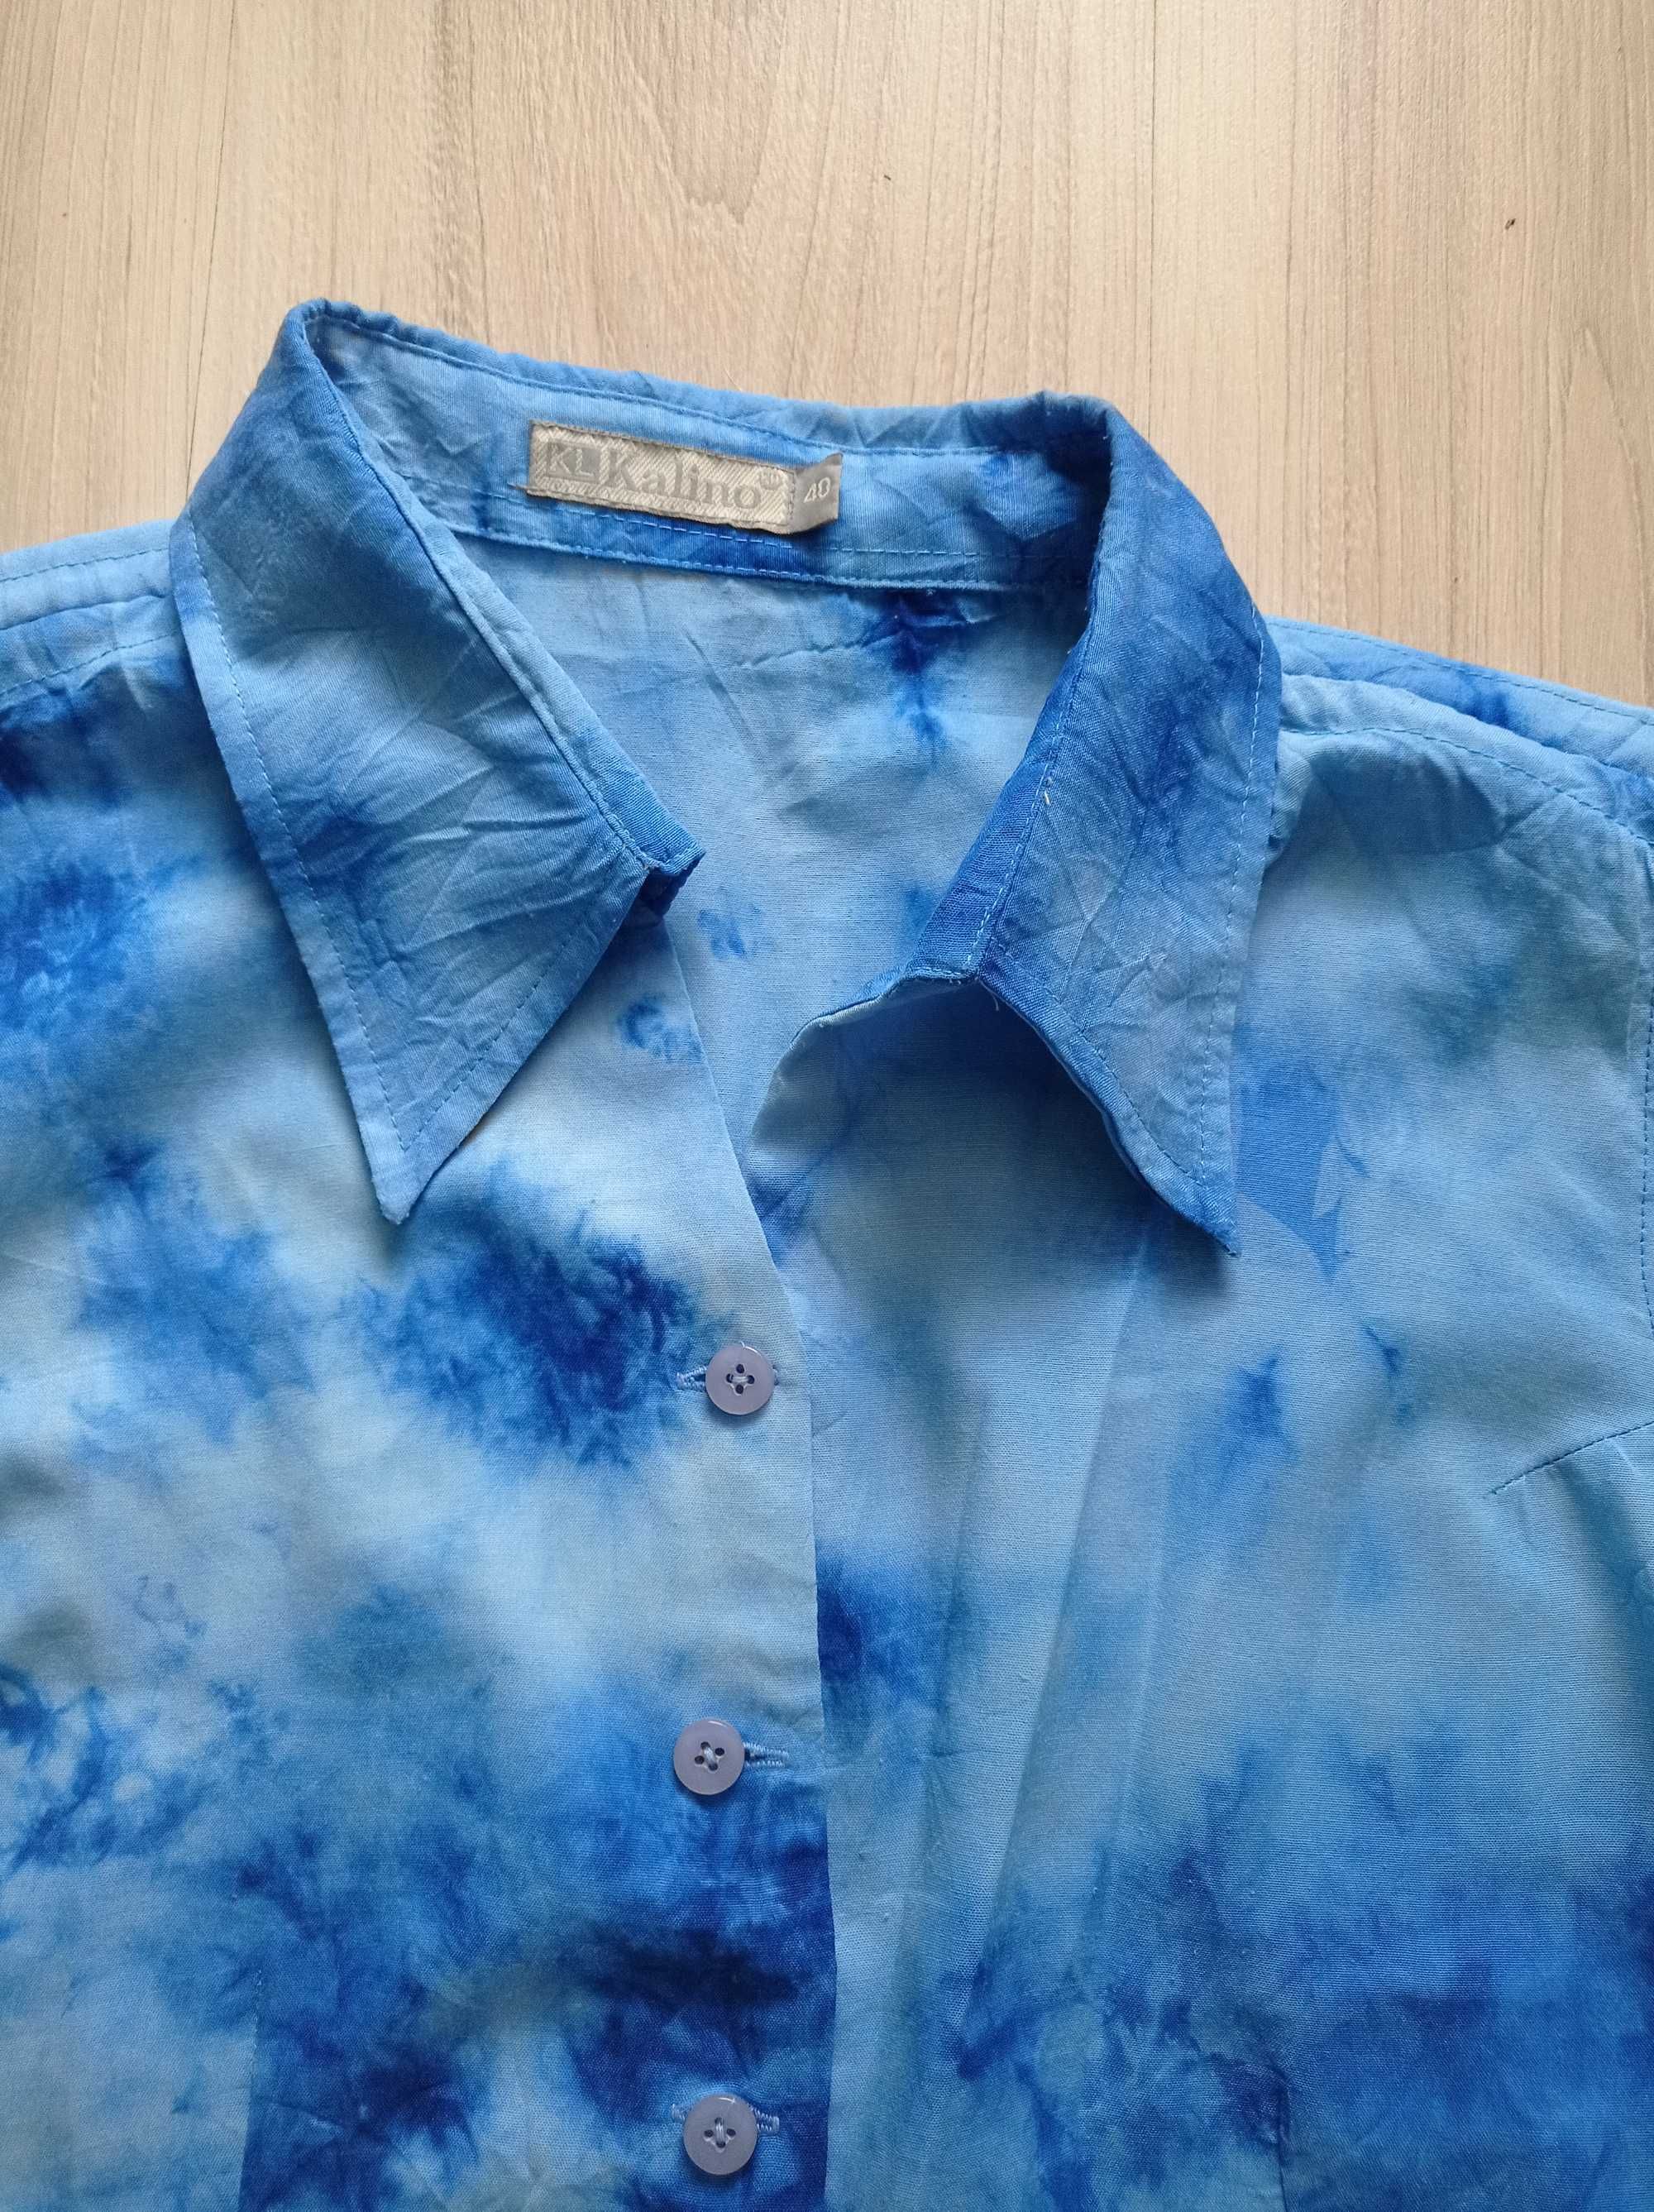 Bluzka, koszula, niebieska na guziki